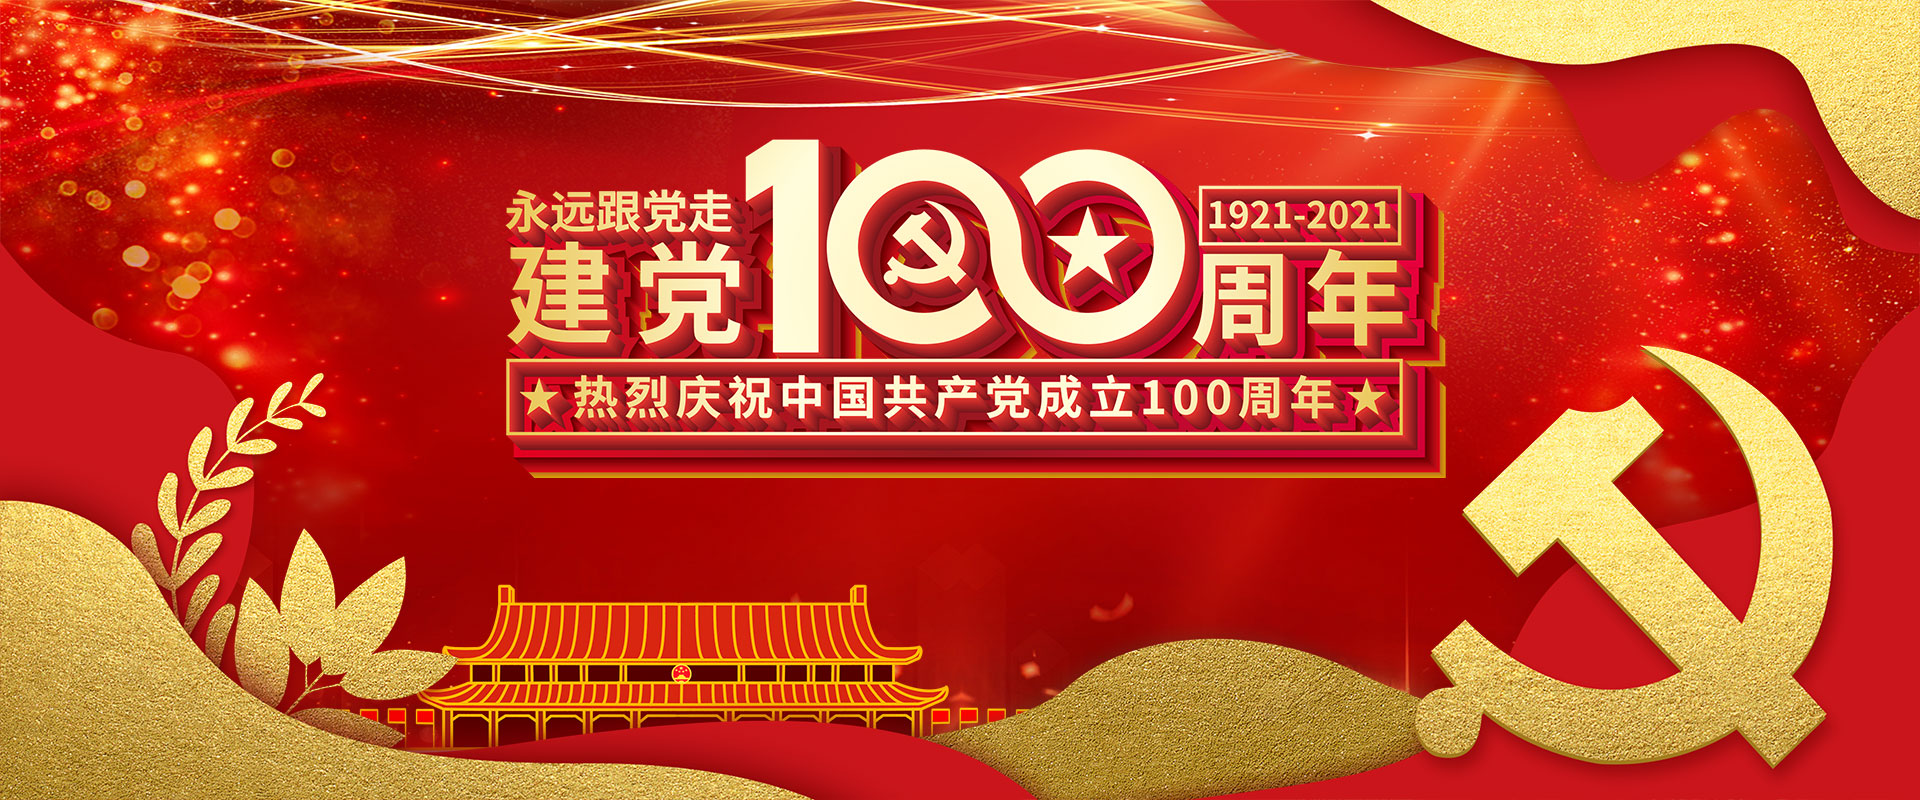 慶祝建黨100周年